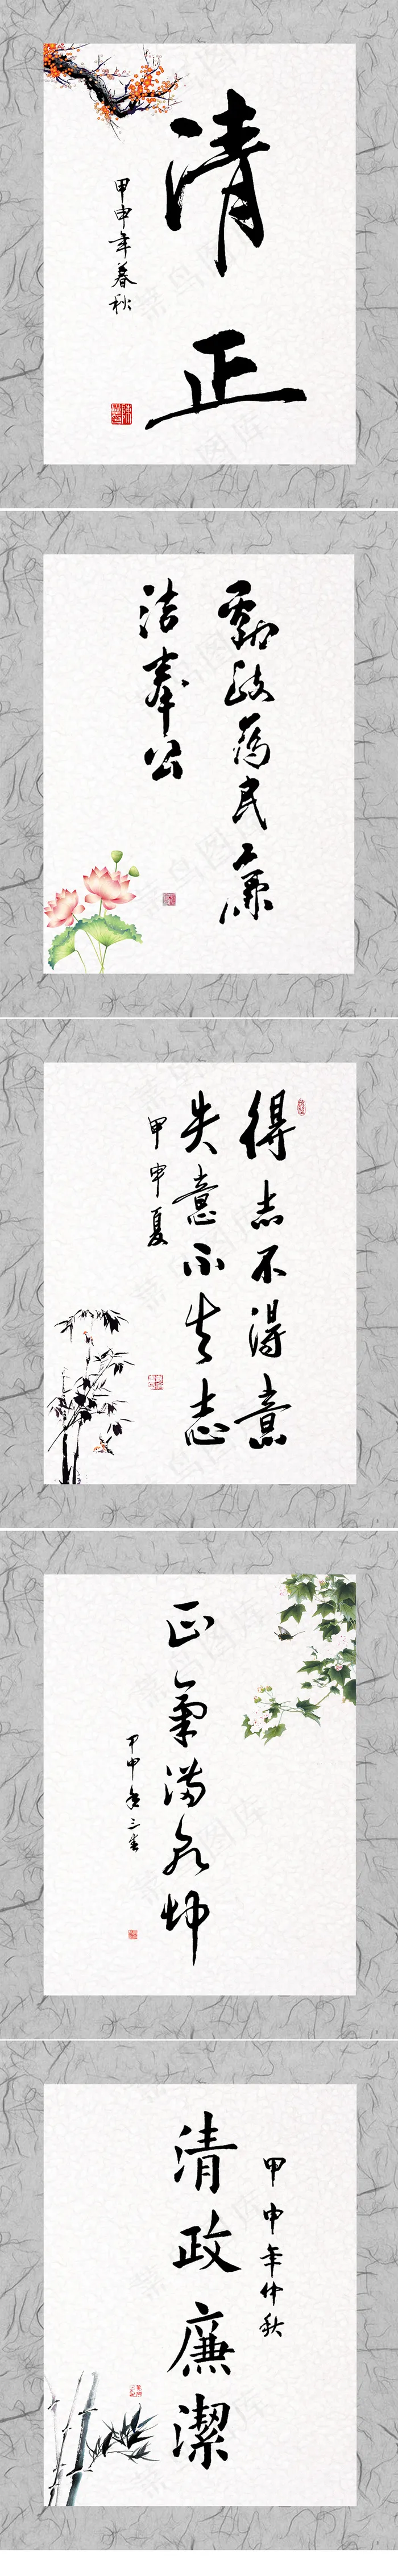 中国风书法字体素材